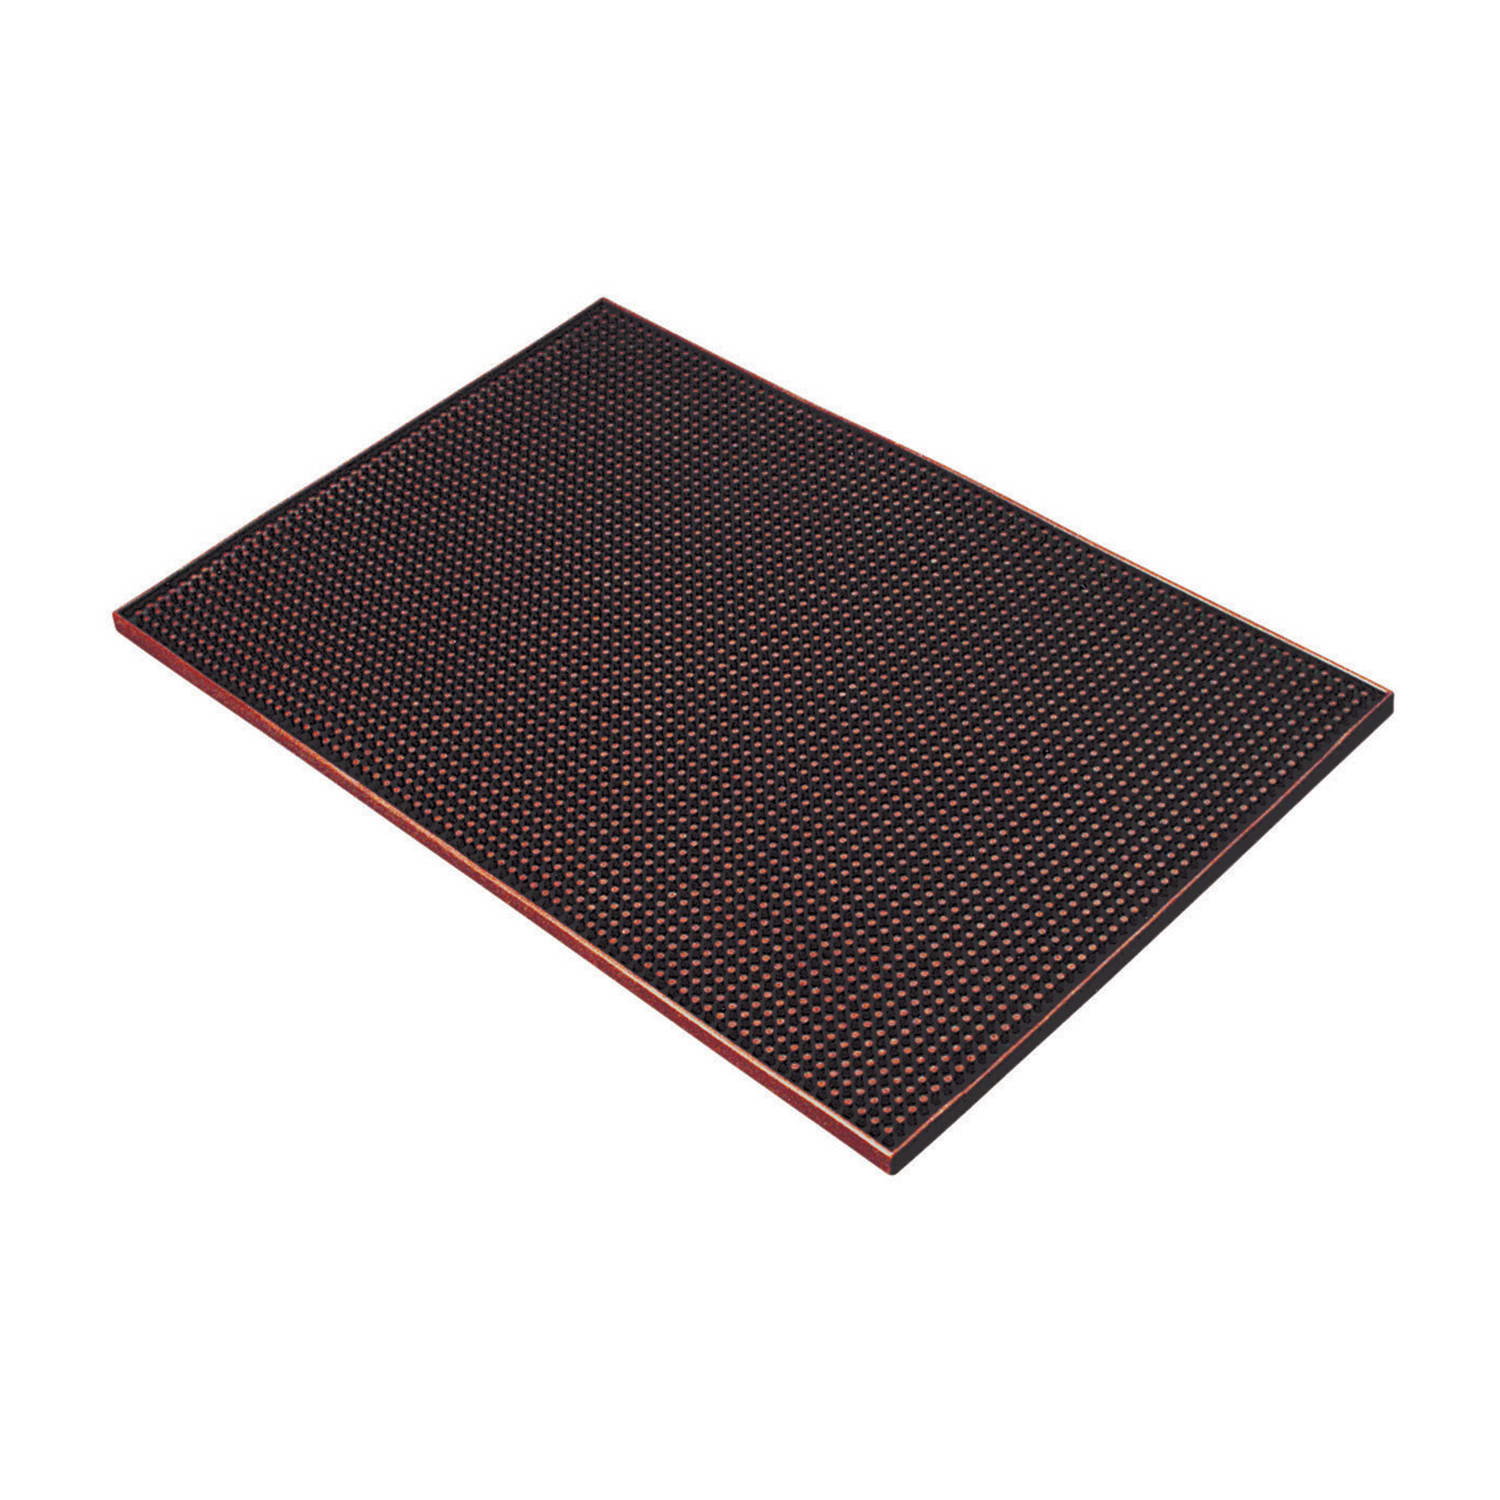 Winco Rubber Bar Service Spill Mat, 27 x 3.25 - Black